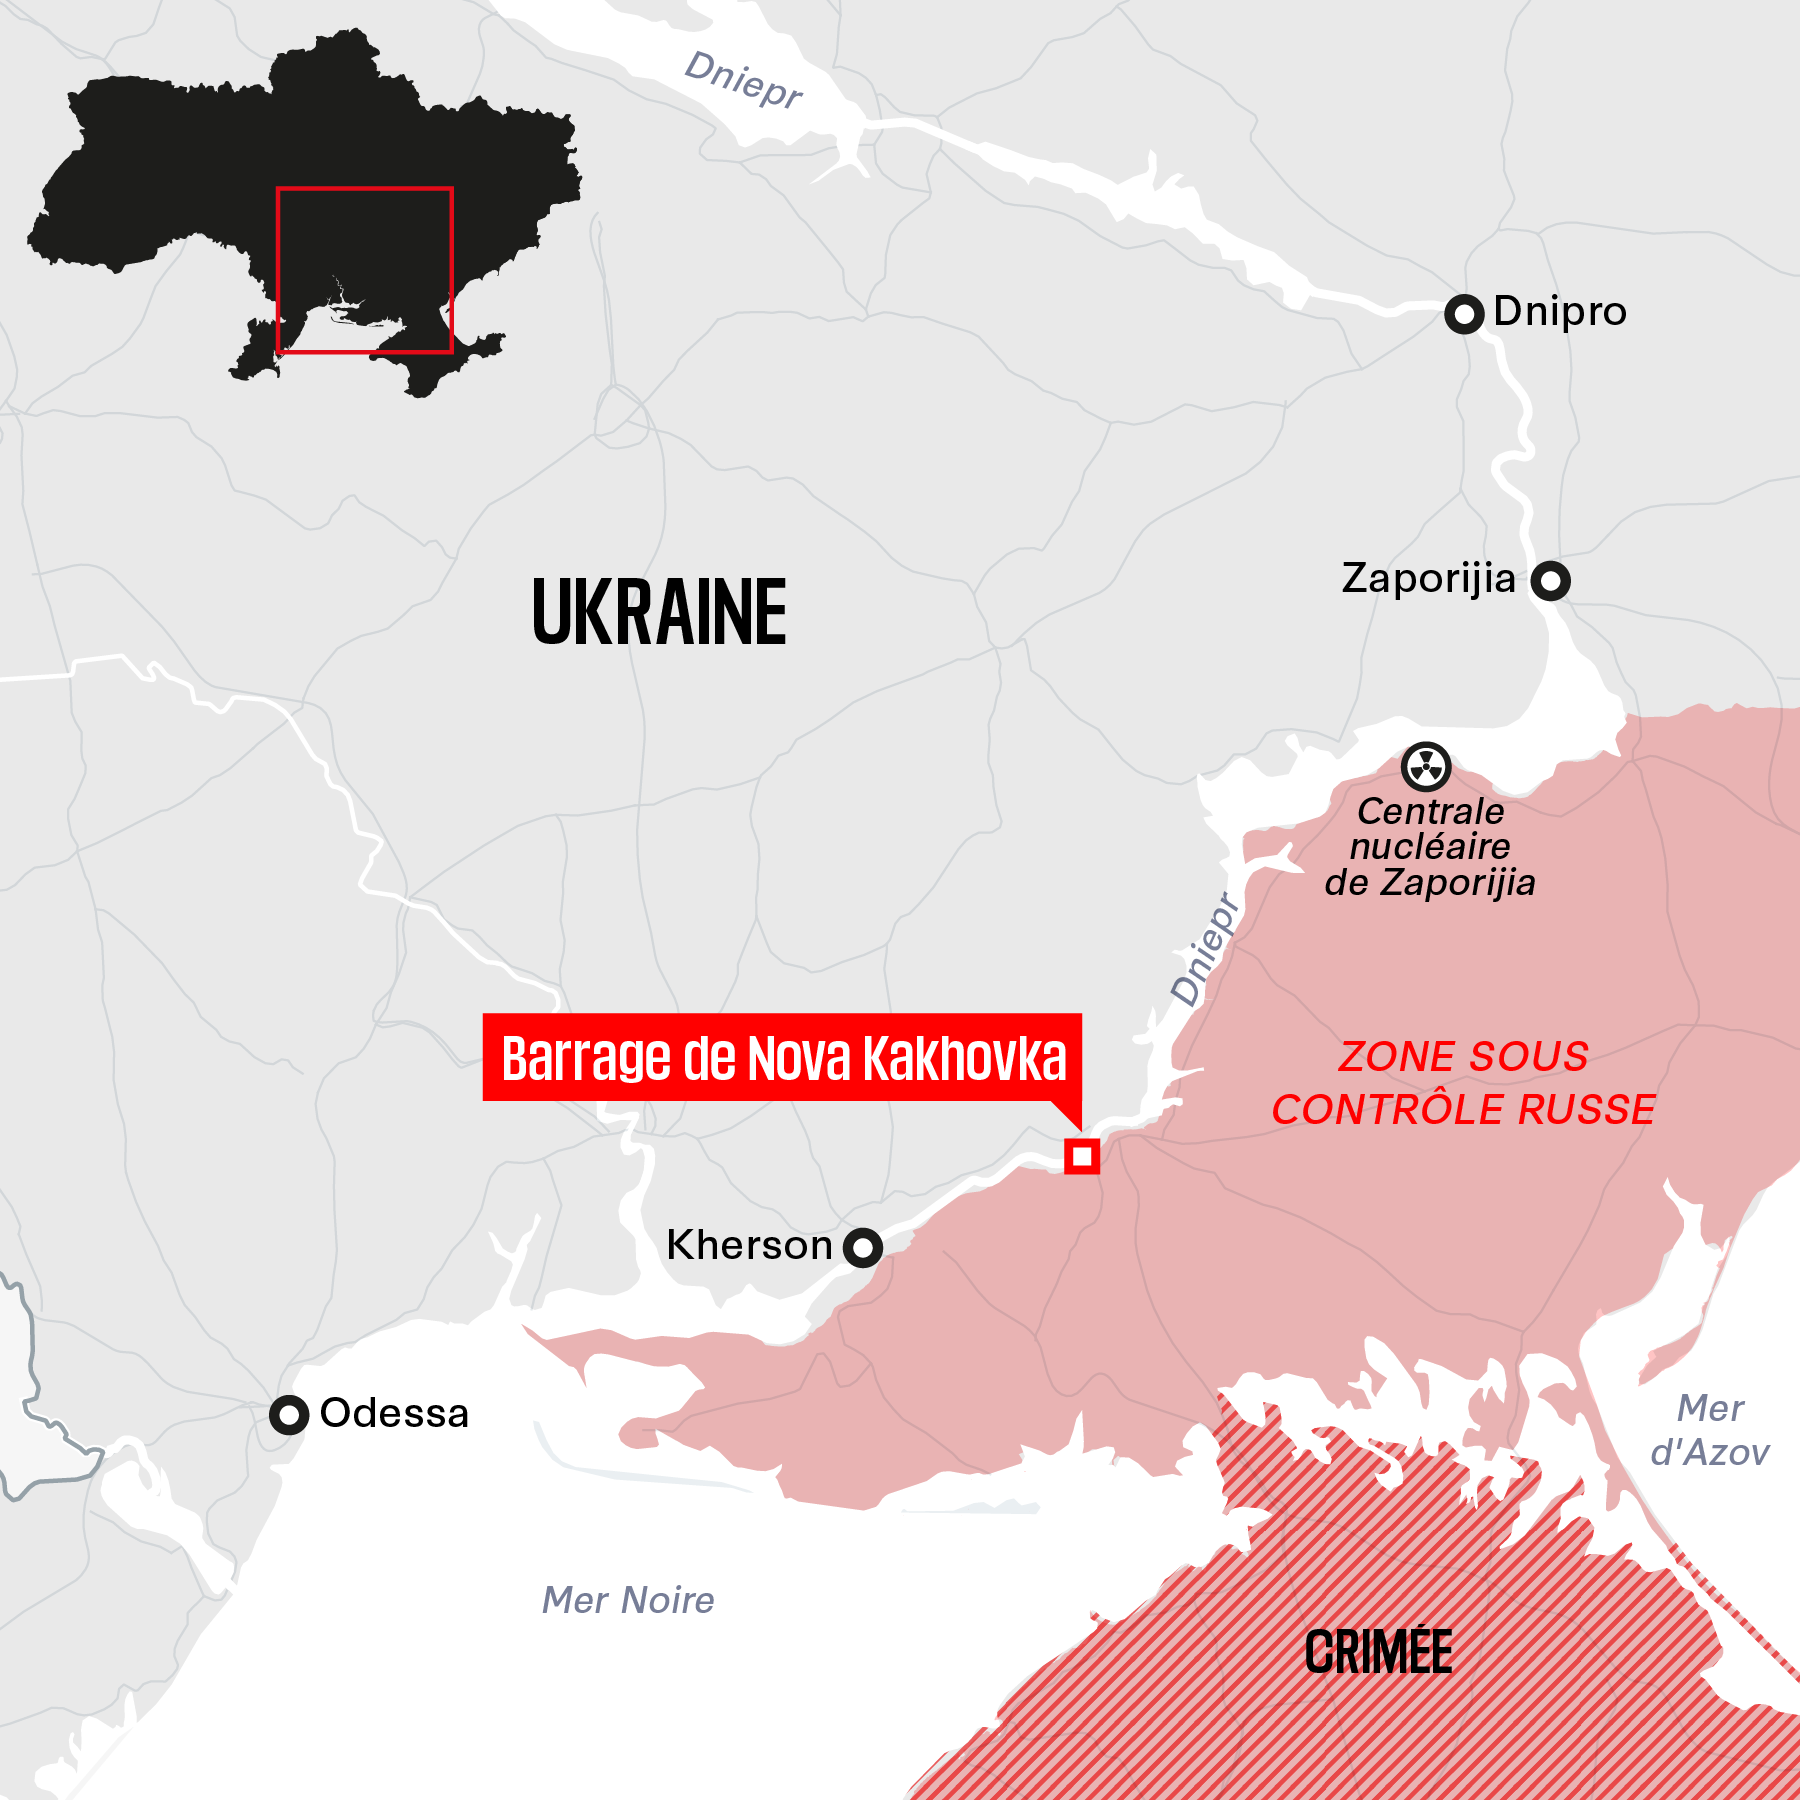 EN DIRECT - Destruction du barrage Nova Kakhovka : l'Ukraine dit évacuer  plus de «17 000 civils» – Libération